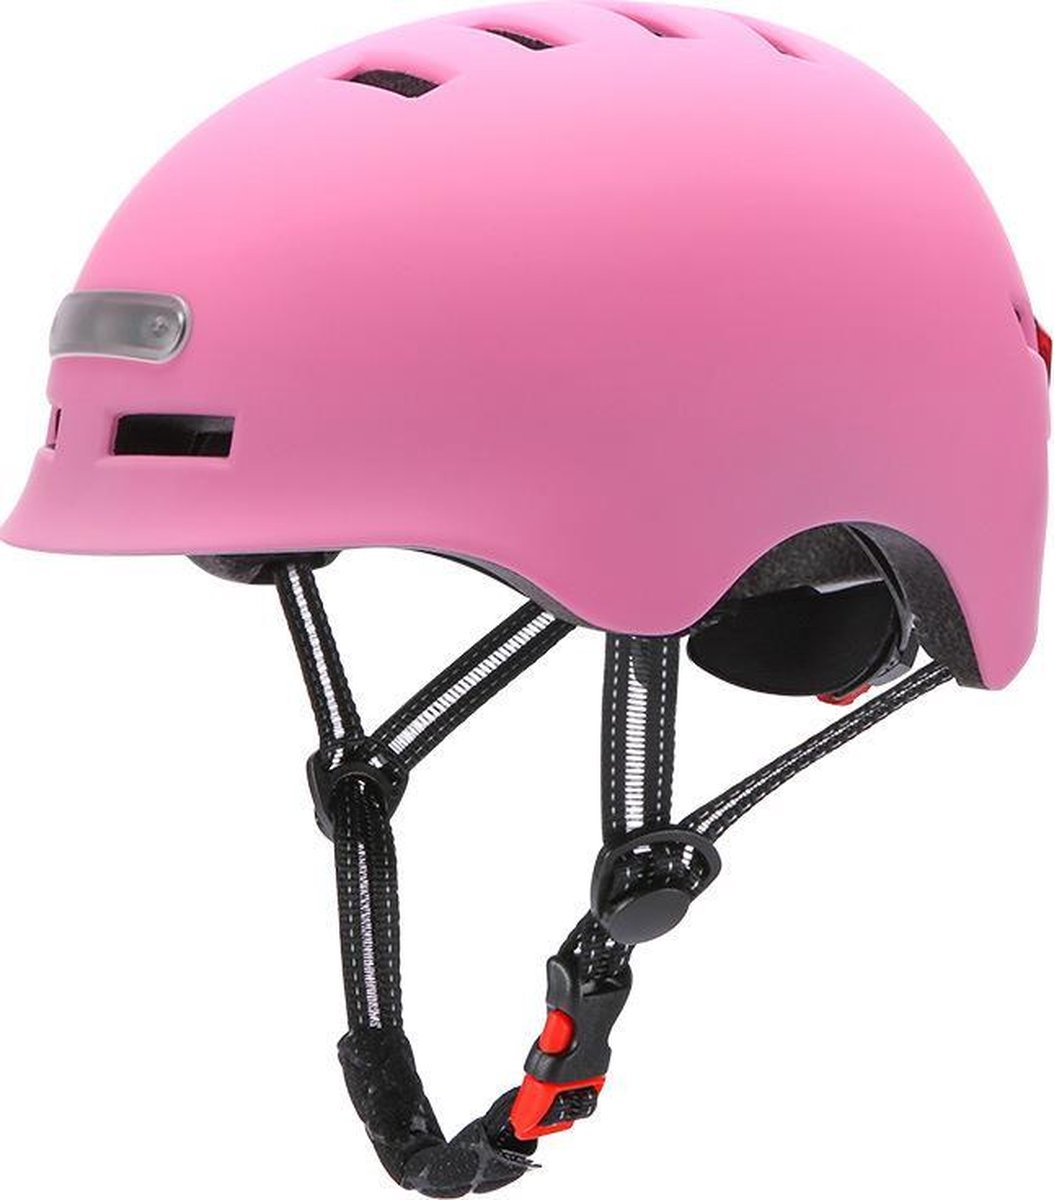 Fietshelm met ingebouwde voor- en achterlicht|LED licht |SMART helm|, fiets, step| Maat = M | Kleur = roze| Oplaadbaar! (1845274598414)